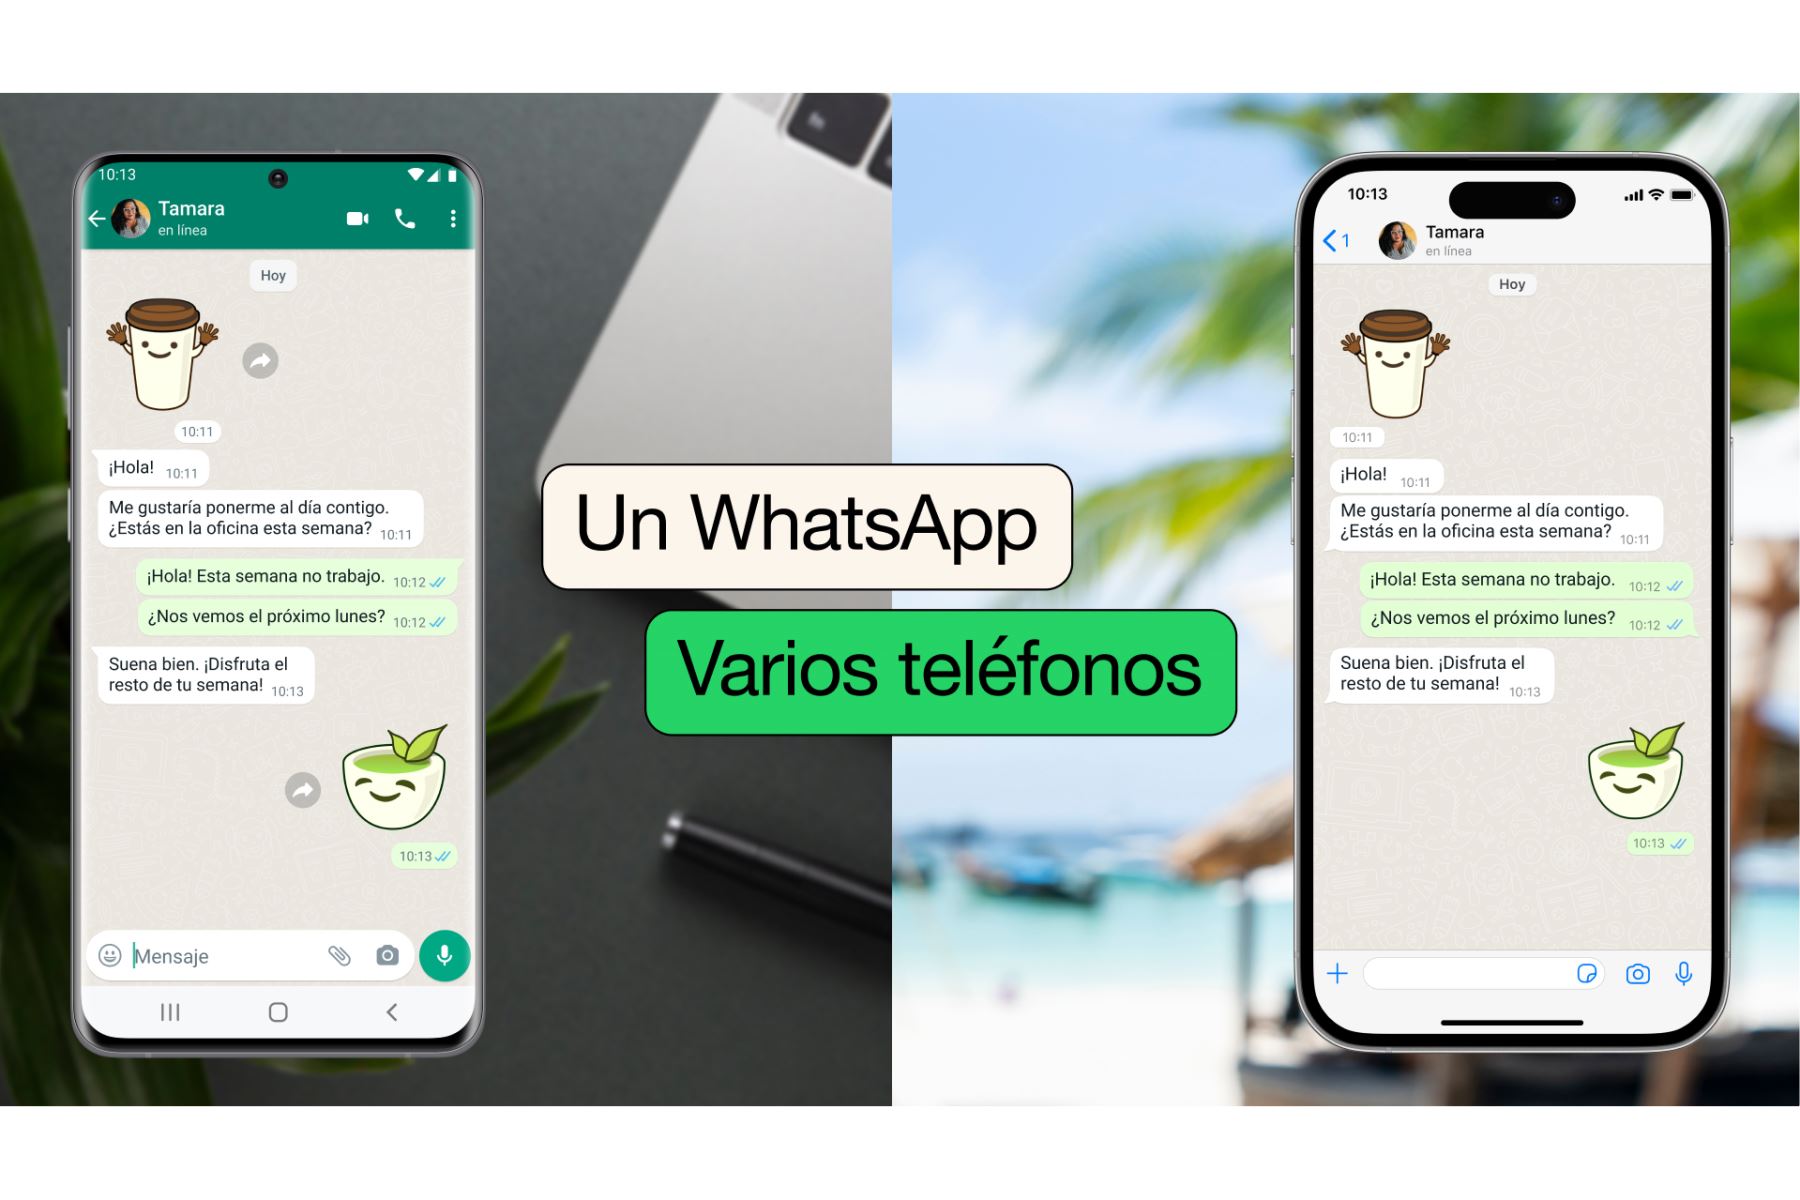 El año pasado, WhatsApp presentó una opción para que los usuarios pudieran enviar mensajes sin inconvenientes en todos sus dispositivos, con el mismo nivel de privacidad y seguridad.